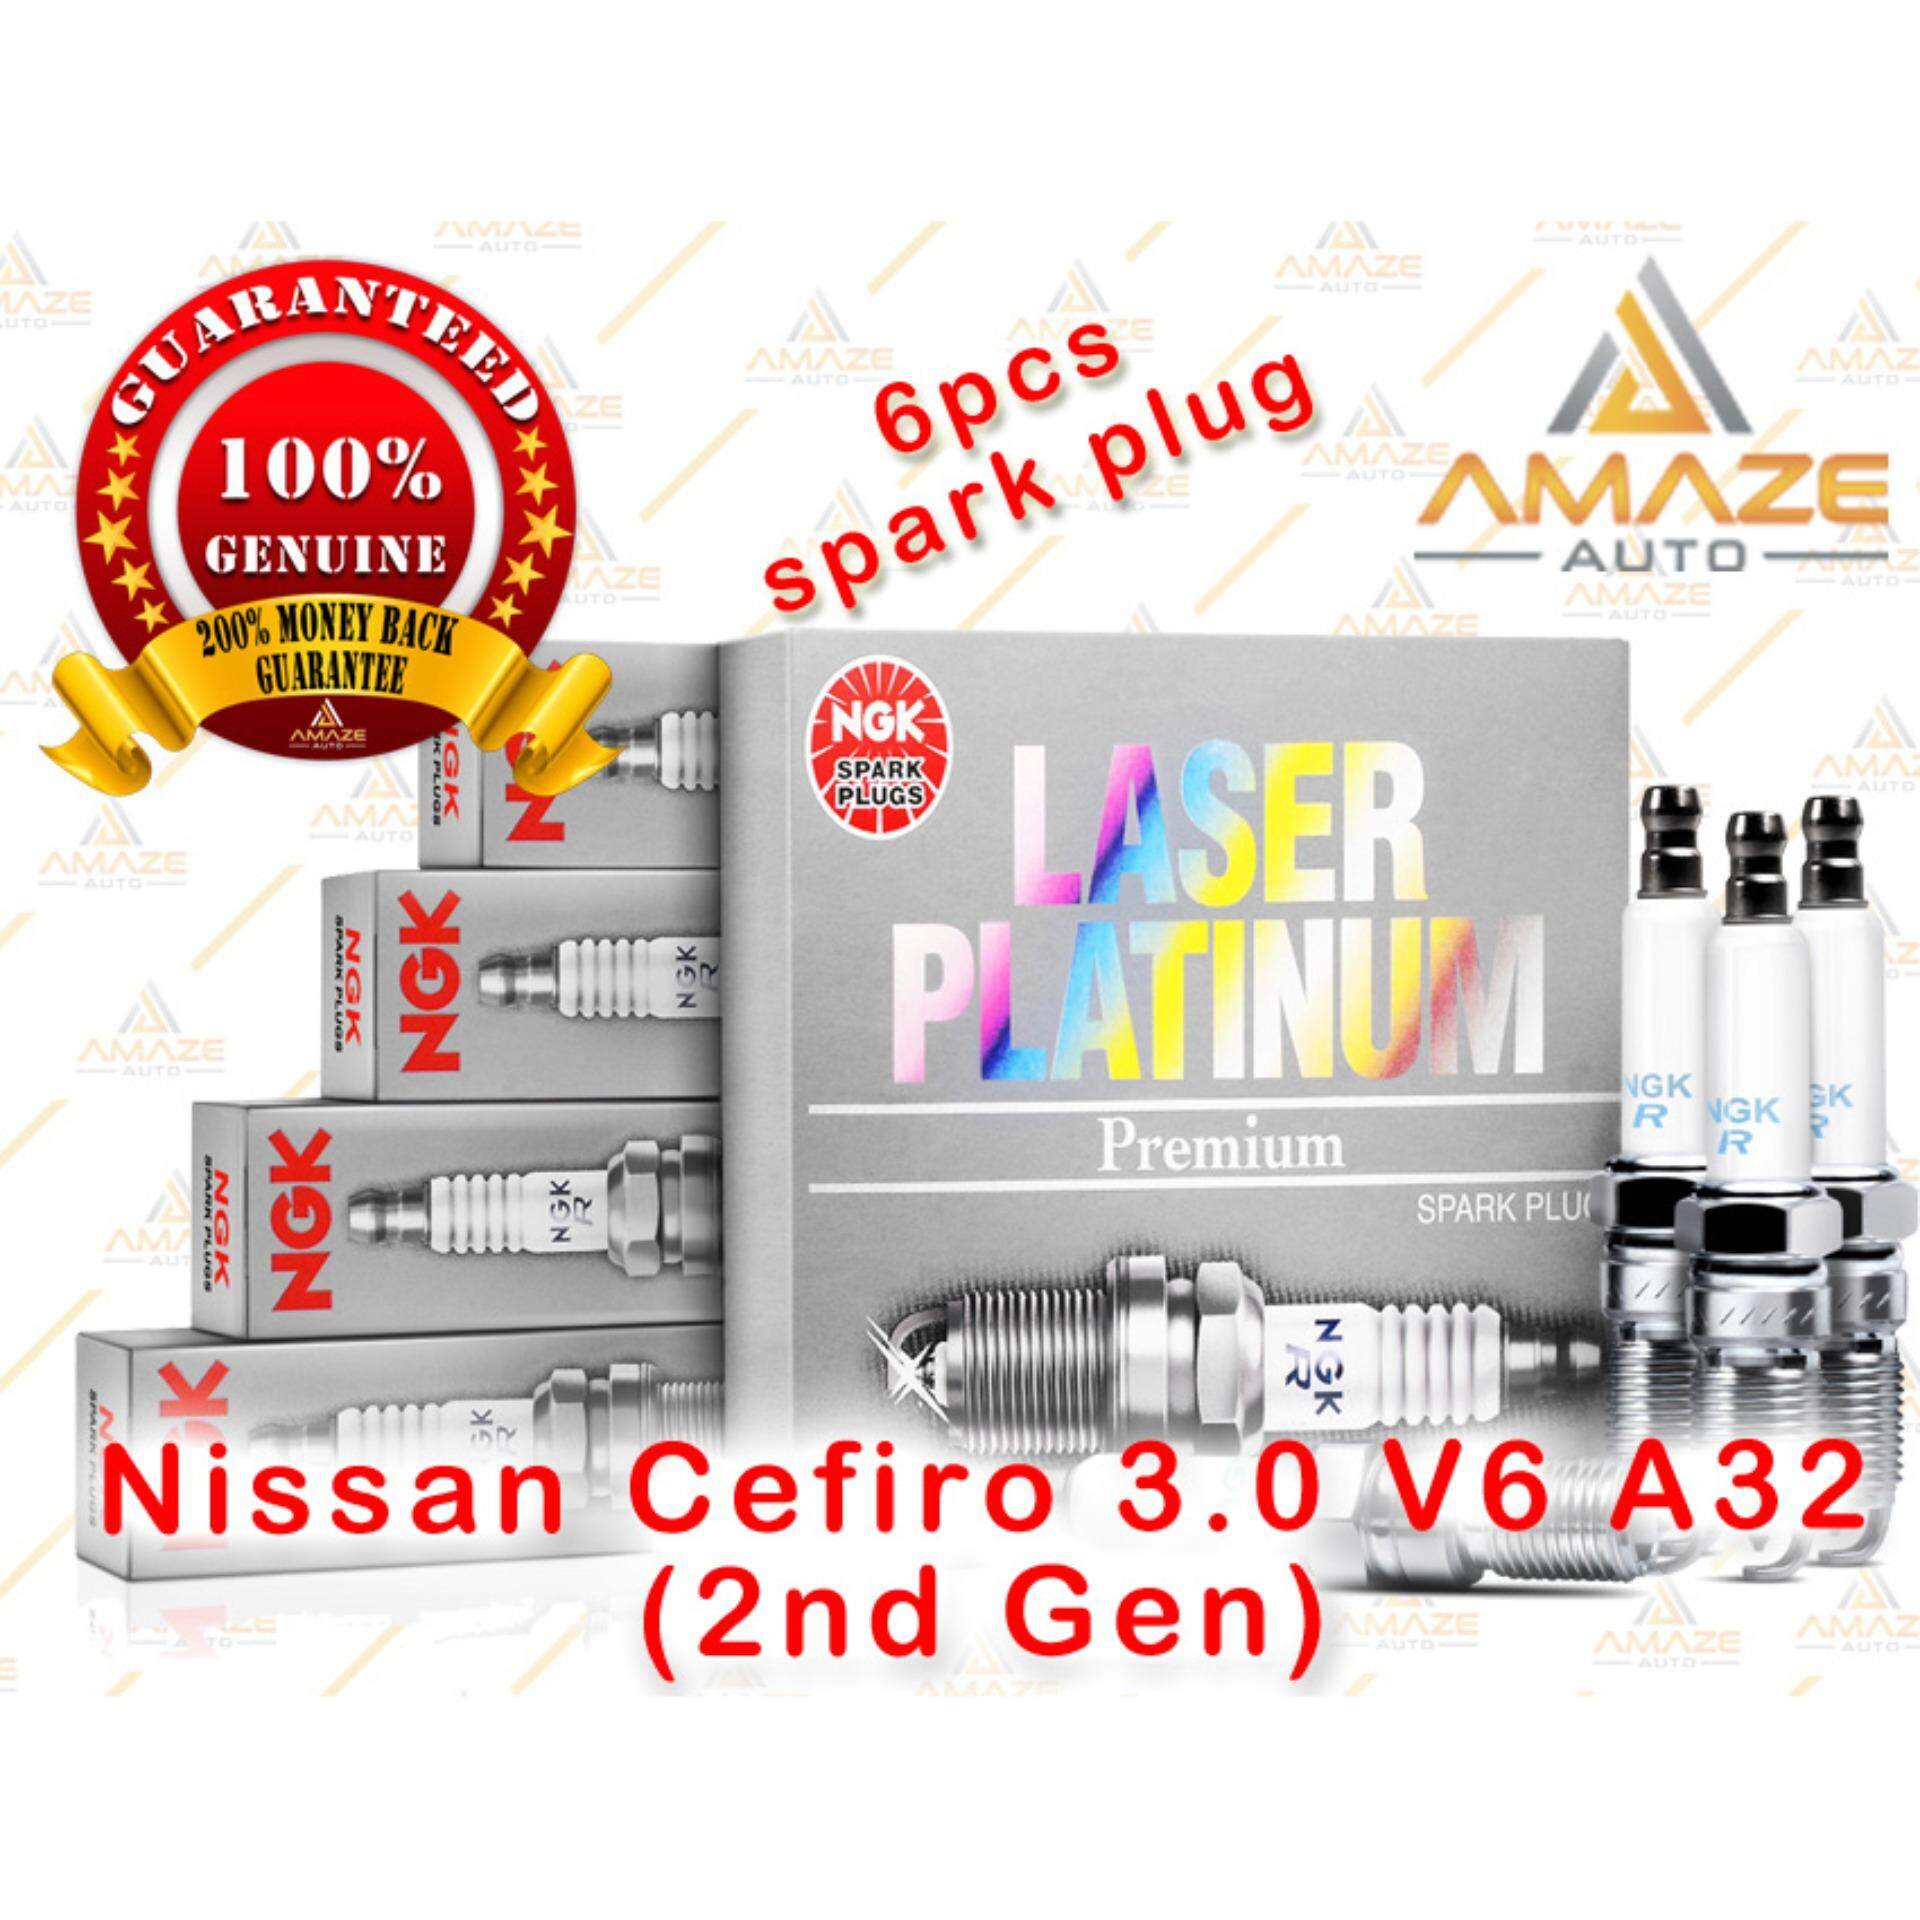 NGK Laser Platinum Spark Plug for Nissan Cefiro 3.0 V6 A32 (2nd Gen) (1997-2001)